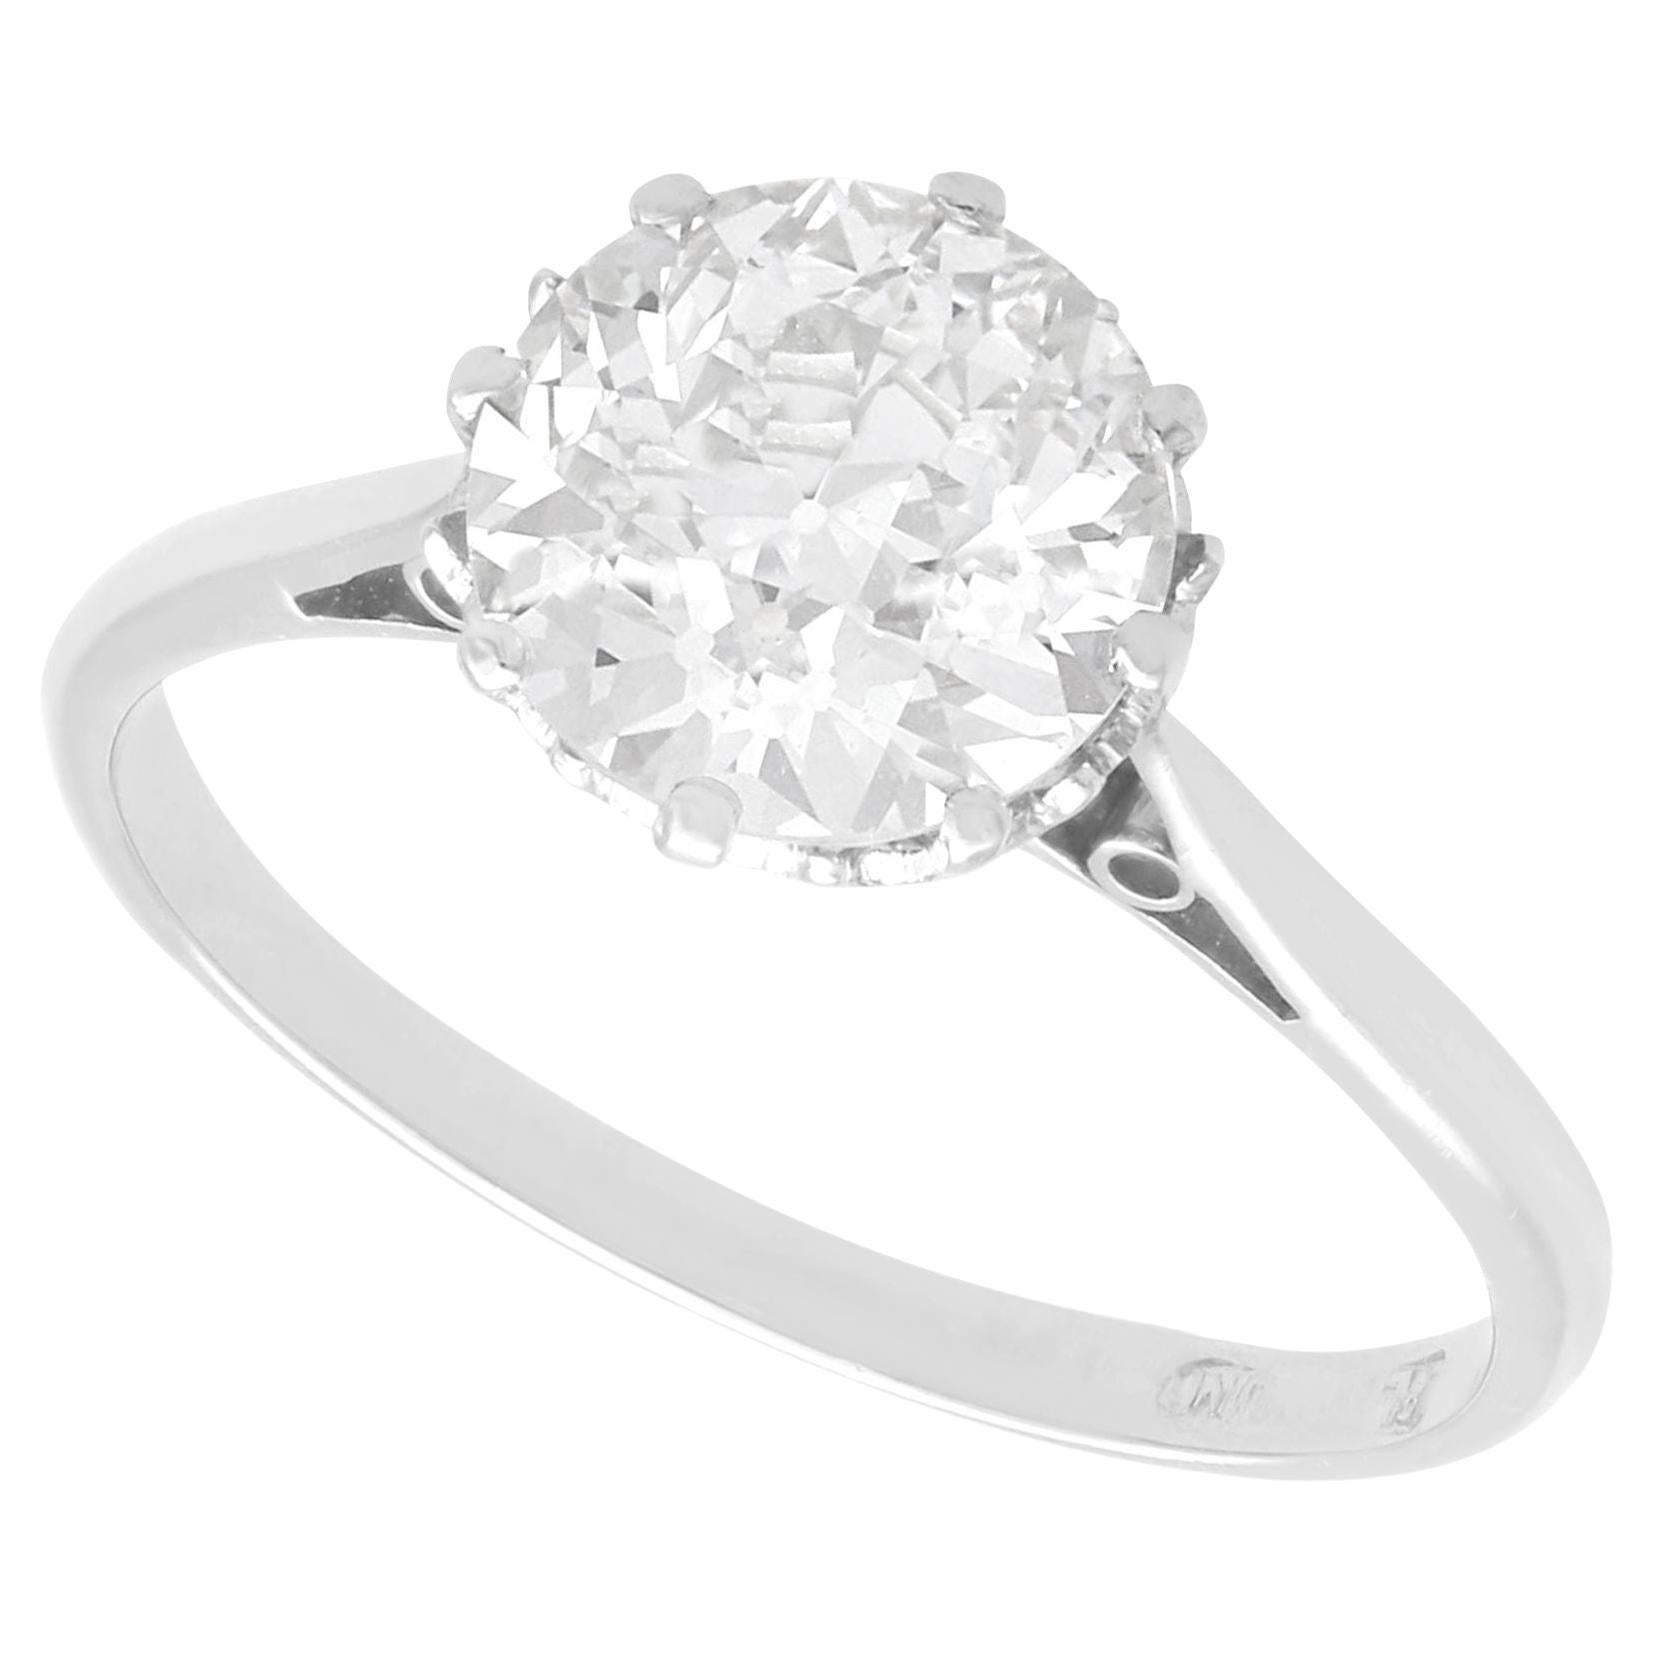 Antique 1.86 Carat Diamond and Platinum Solitaire Engagement Ring